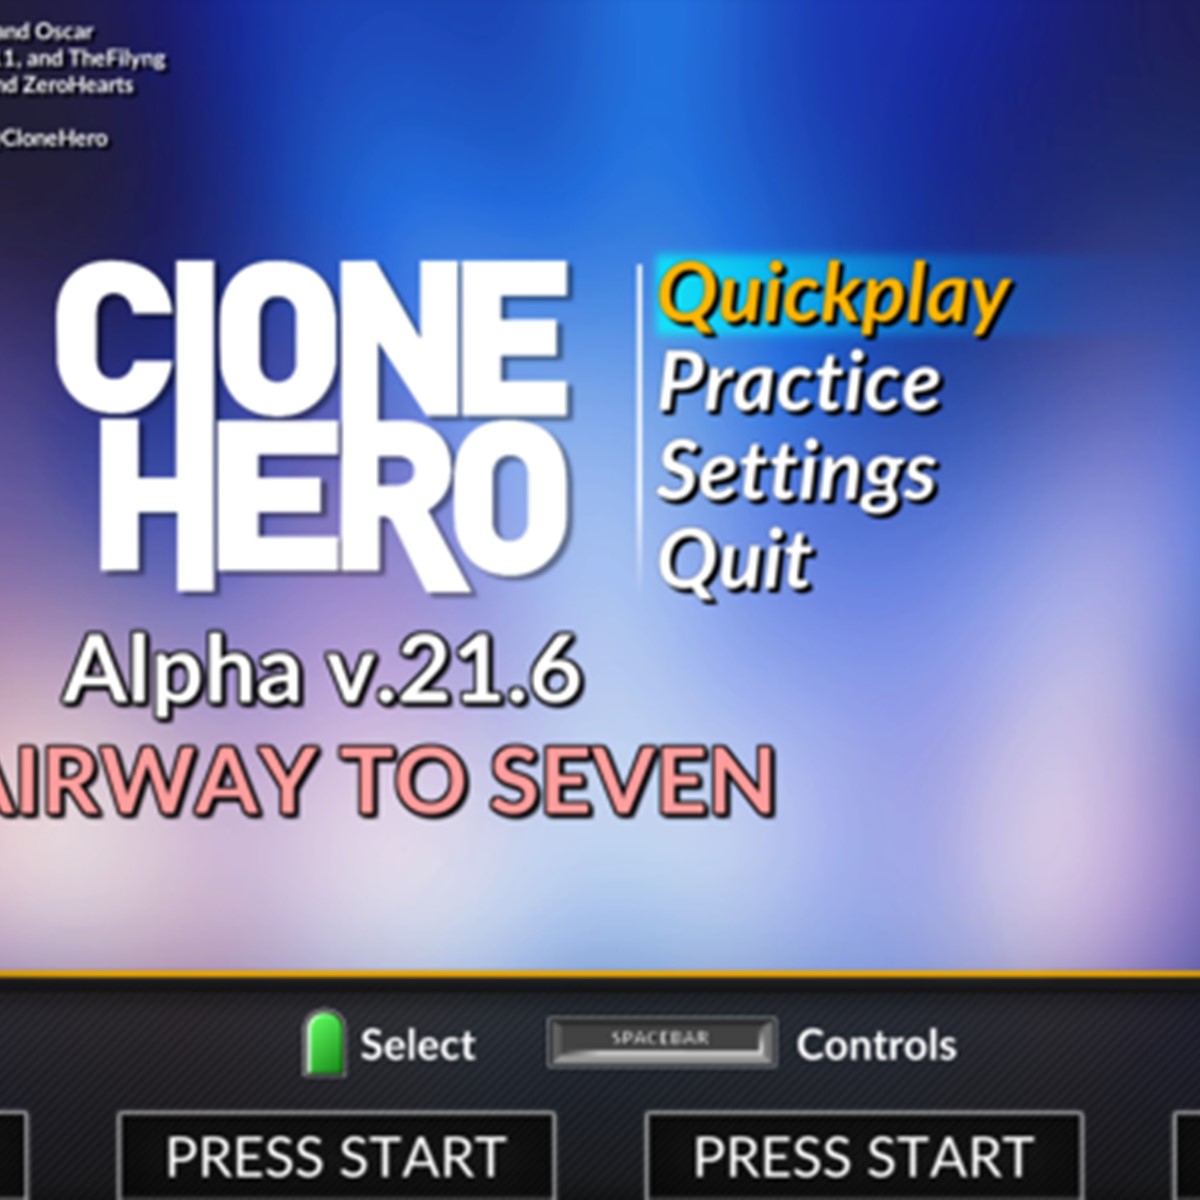 Clone Hero Download Songs Mac